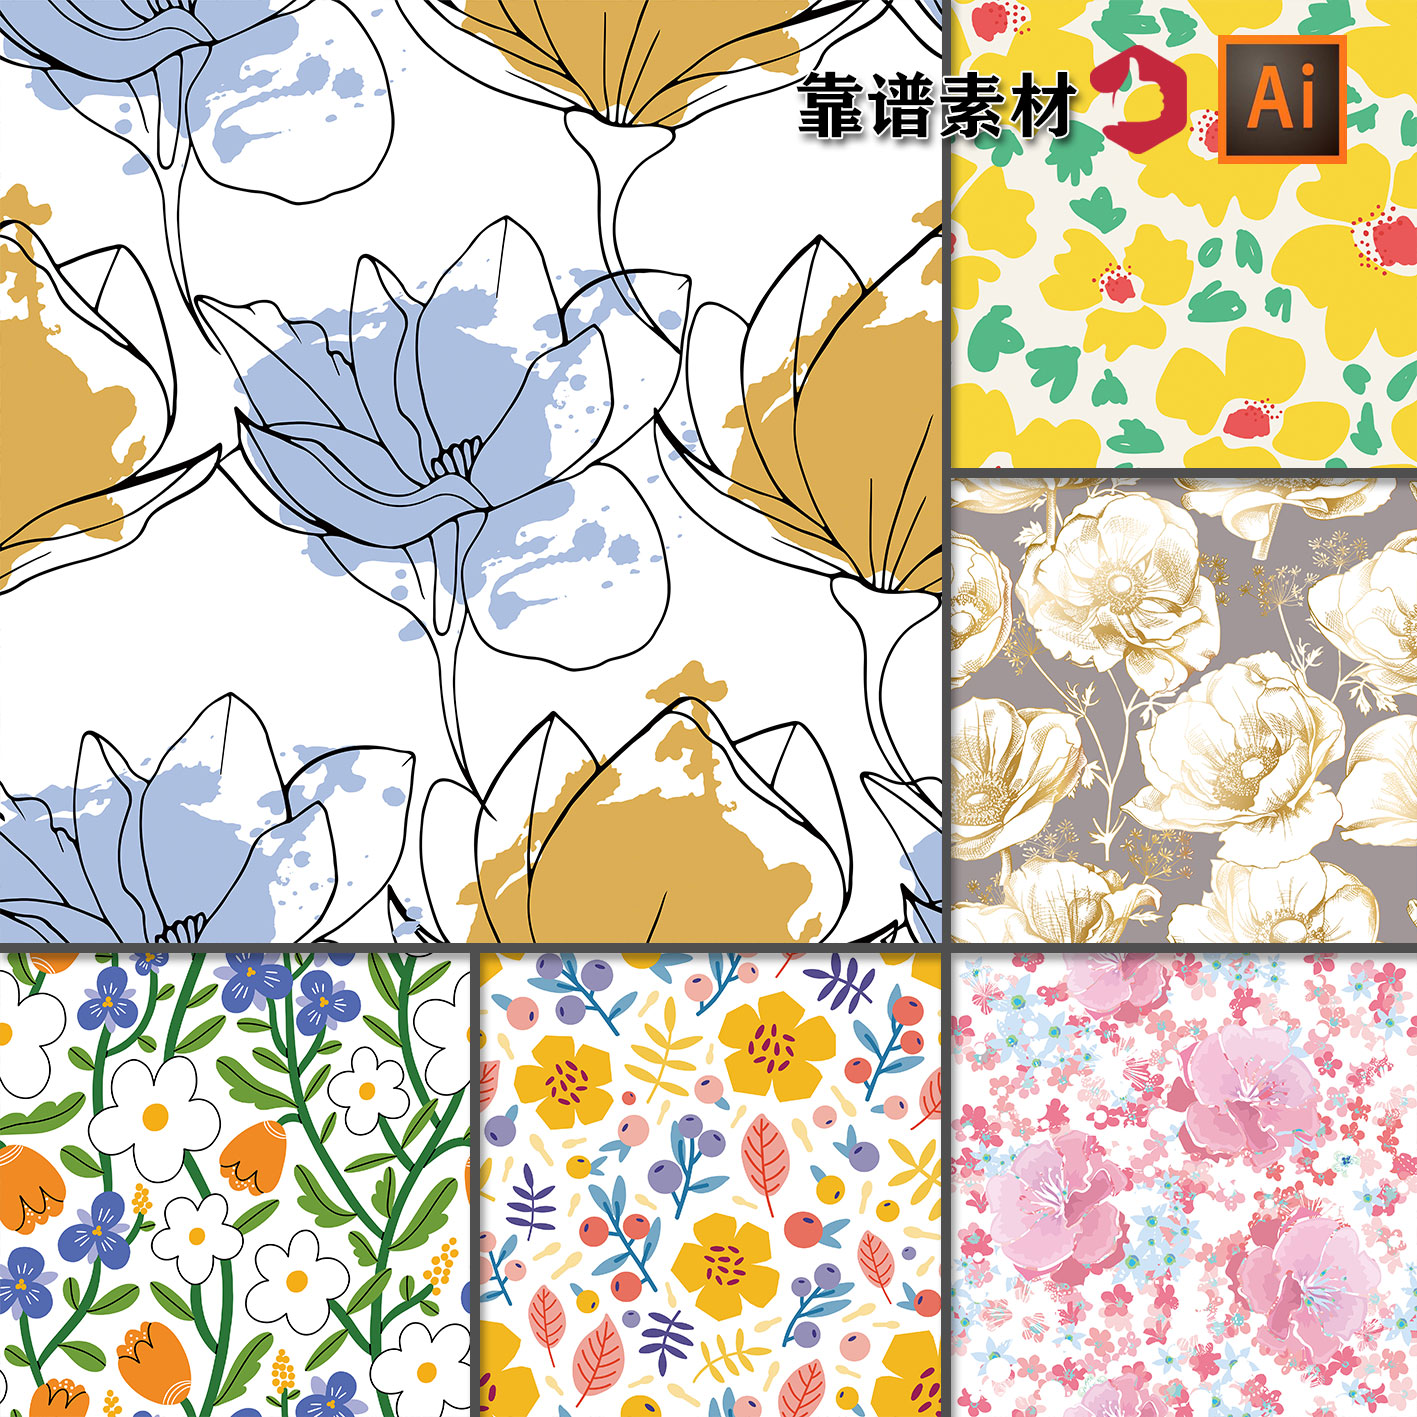 精美大花朵抽象鲜花花卉地毯服饰面料循环拼接印花图案AI设计素材